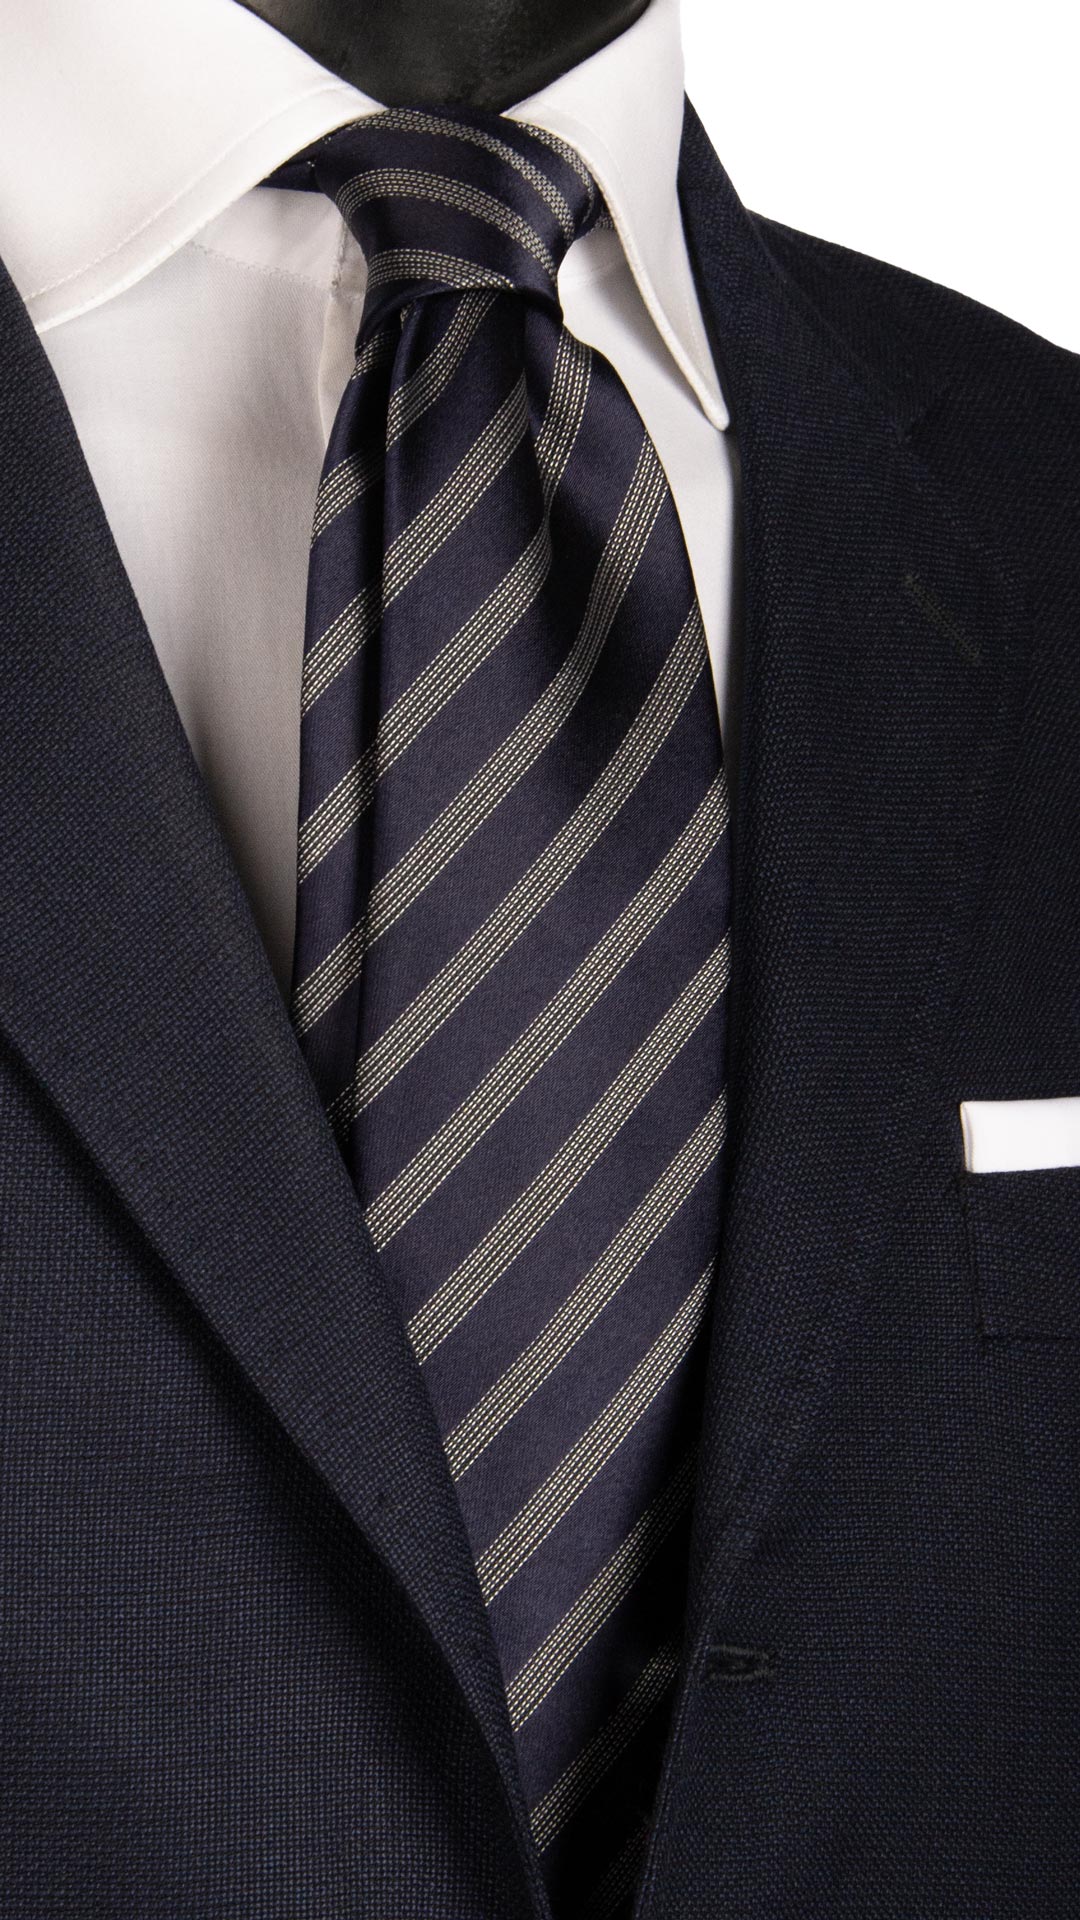 Cravatta Regimental da Cerimonia di Seta Blu con Righe Grigio Argento CY6660 Made in Italy Graffeo Cravatte